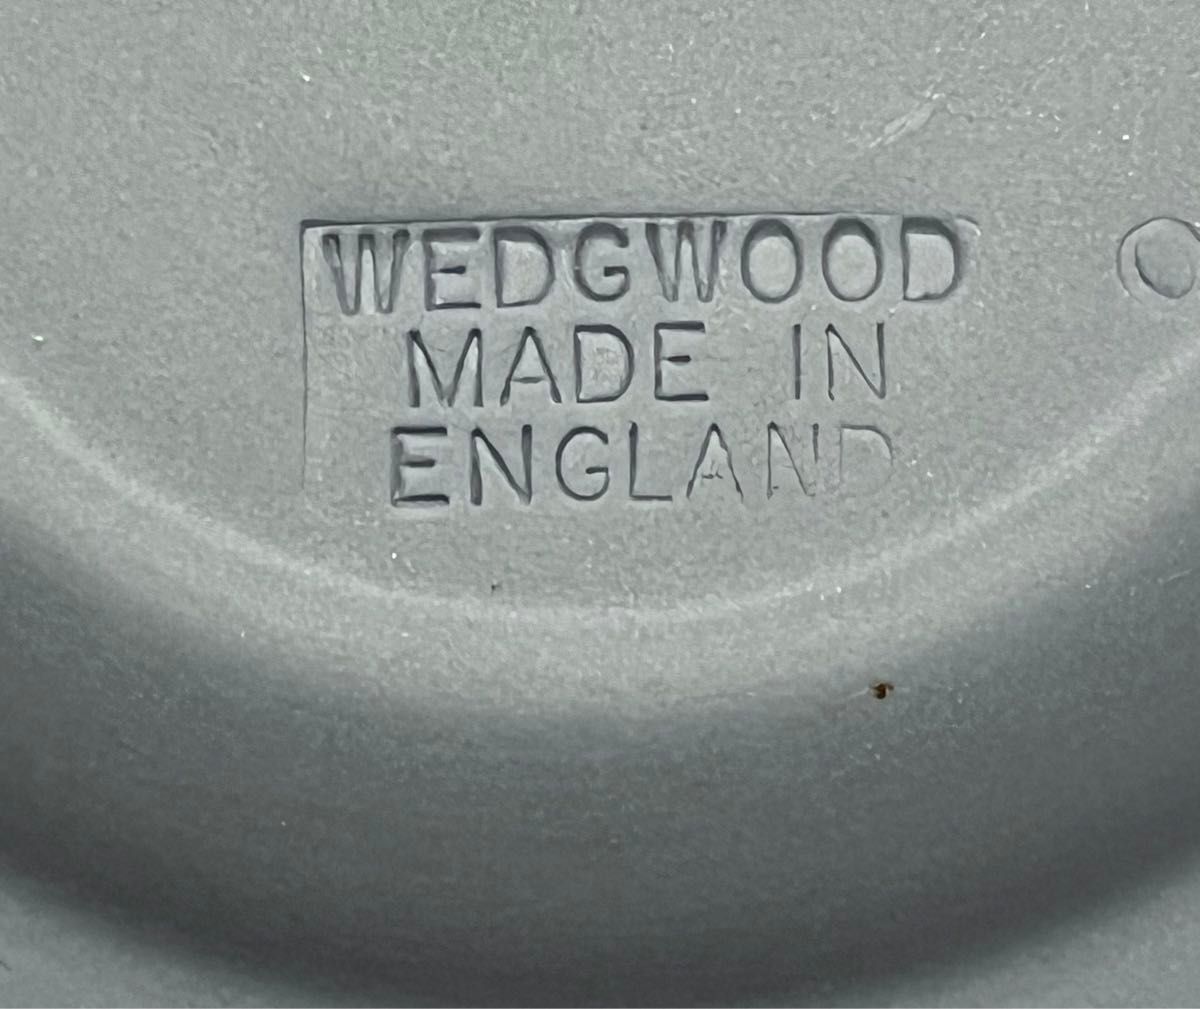 WEDGWOODのジャスパーウェア ペールブルーのトランプシリーズのクローバーと丸の小皿セットです。中古品で箱等はありません。